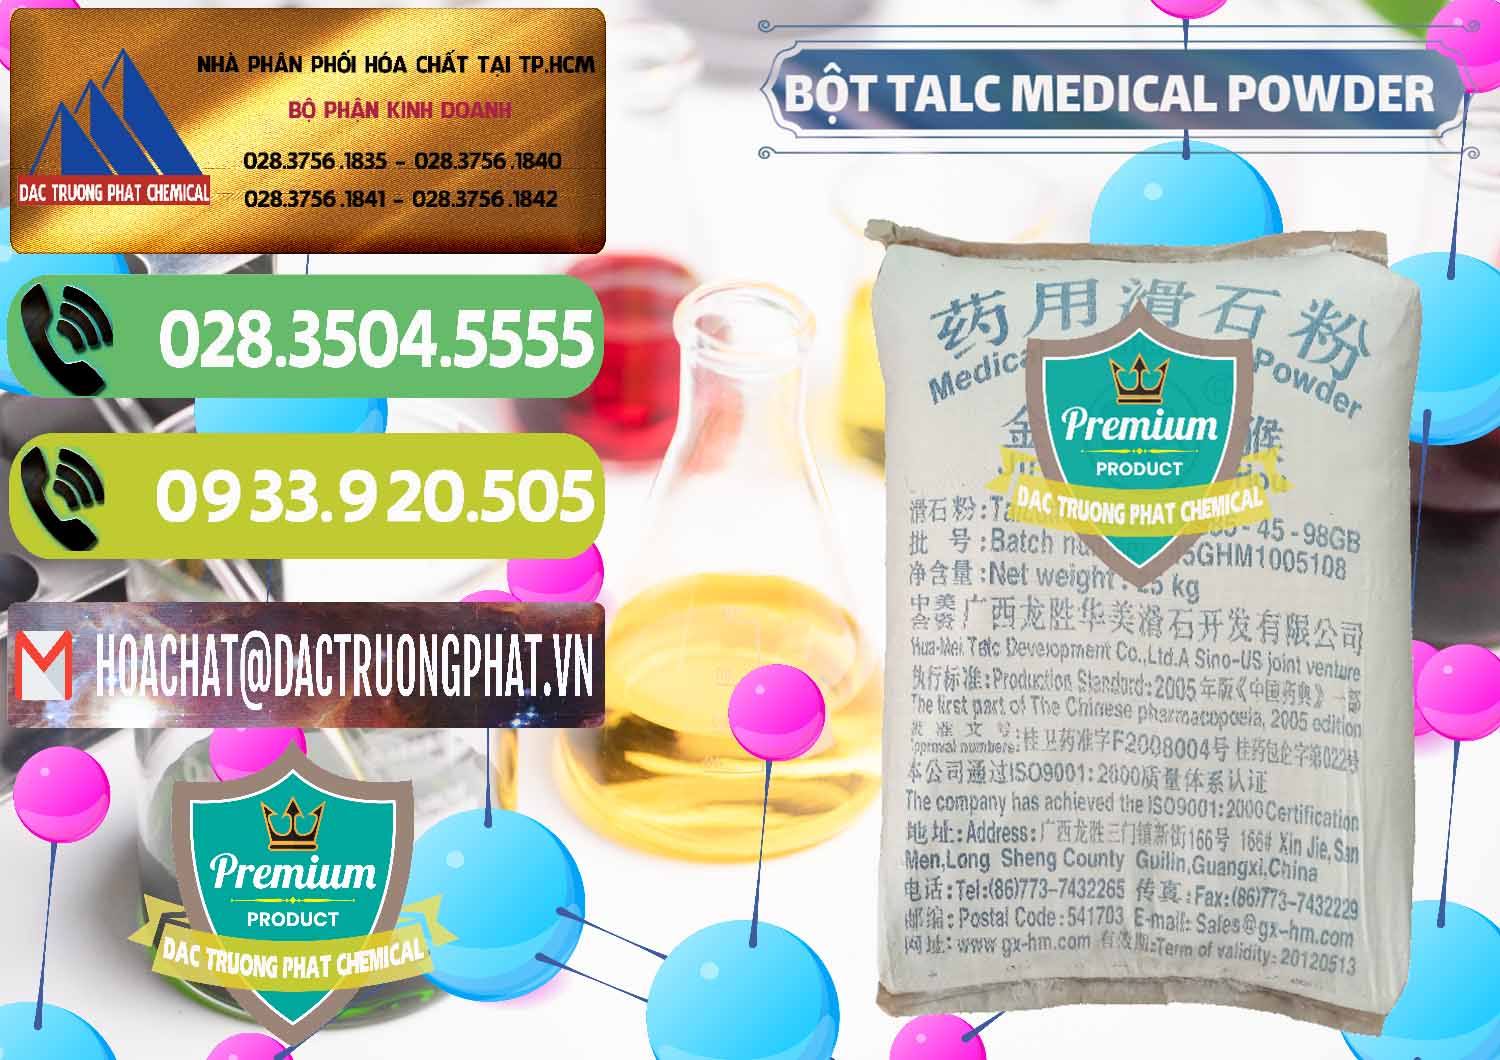 Nơi bán và cung ứng Bột Talc Medical Powder Trung Quốc China - 0036 - Công ty phân phối & cung cấp hóa chất tại TP.HCM - hoachatmientay.vn